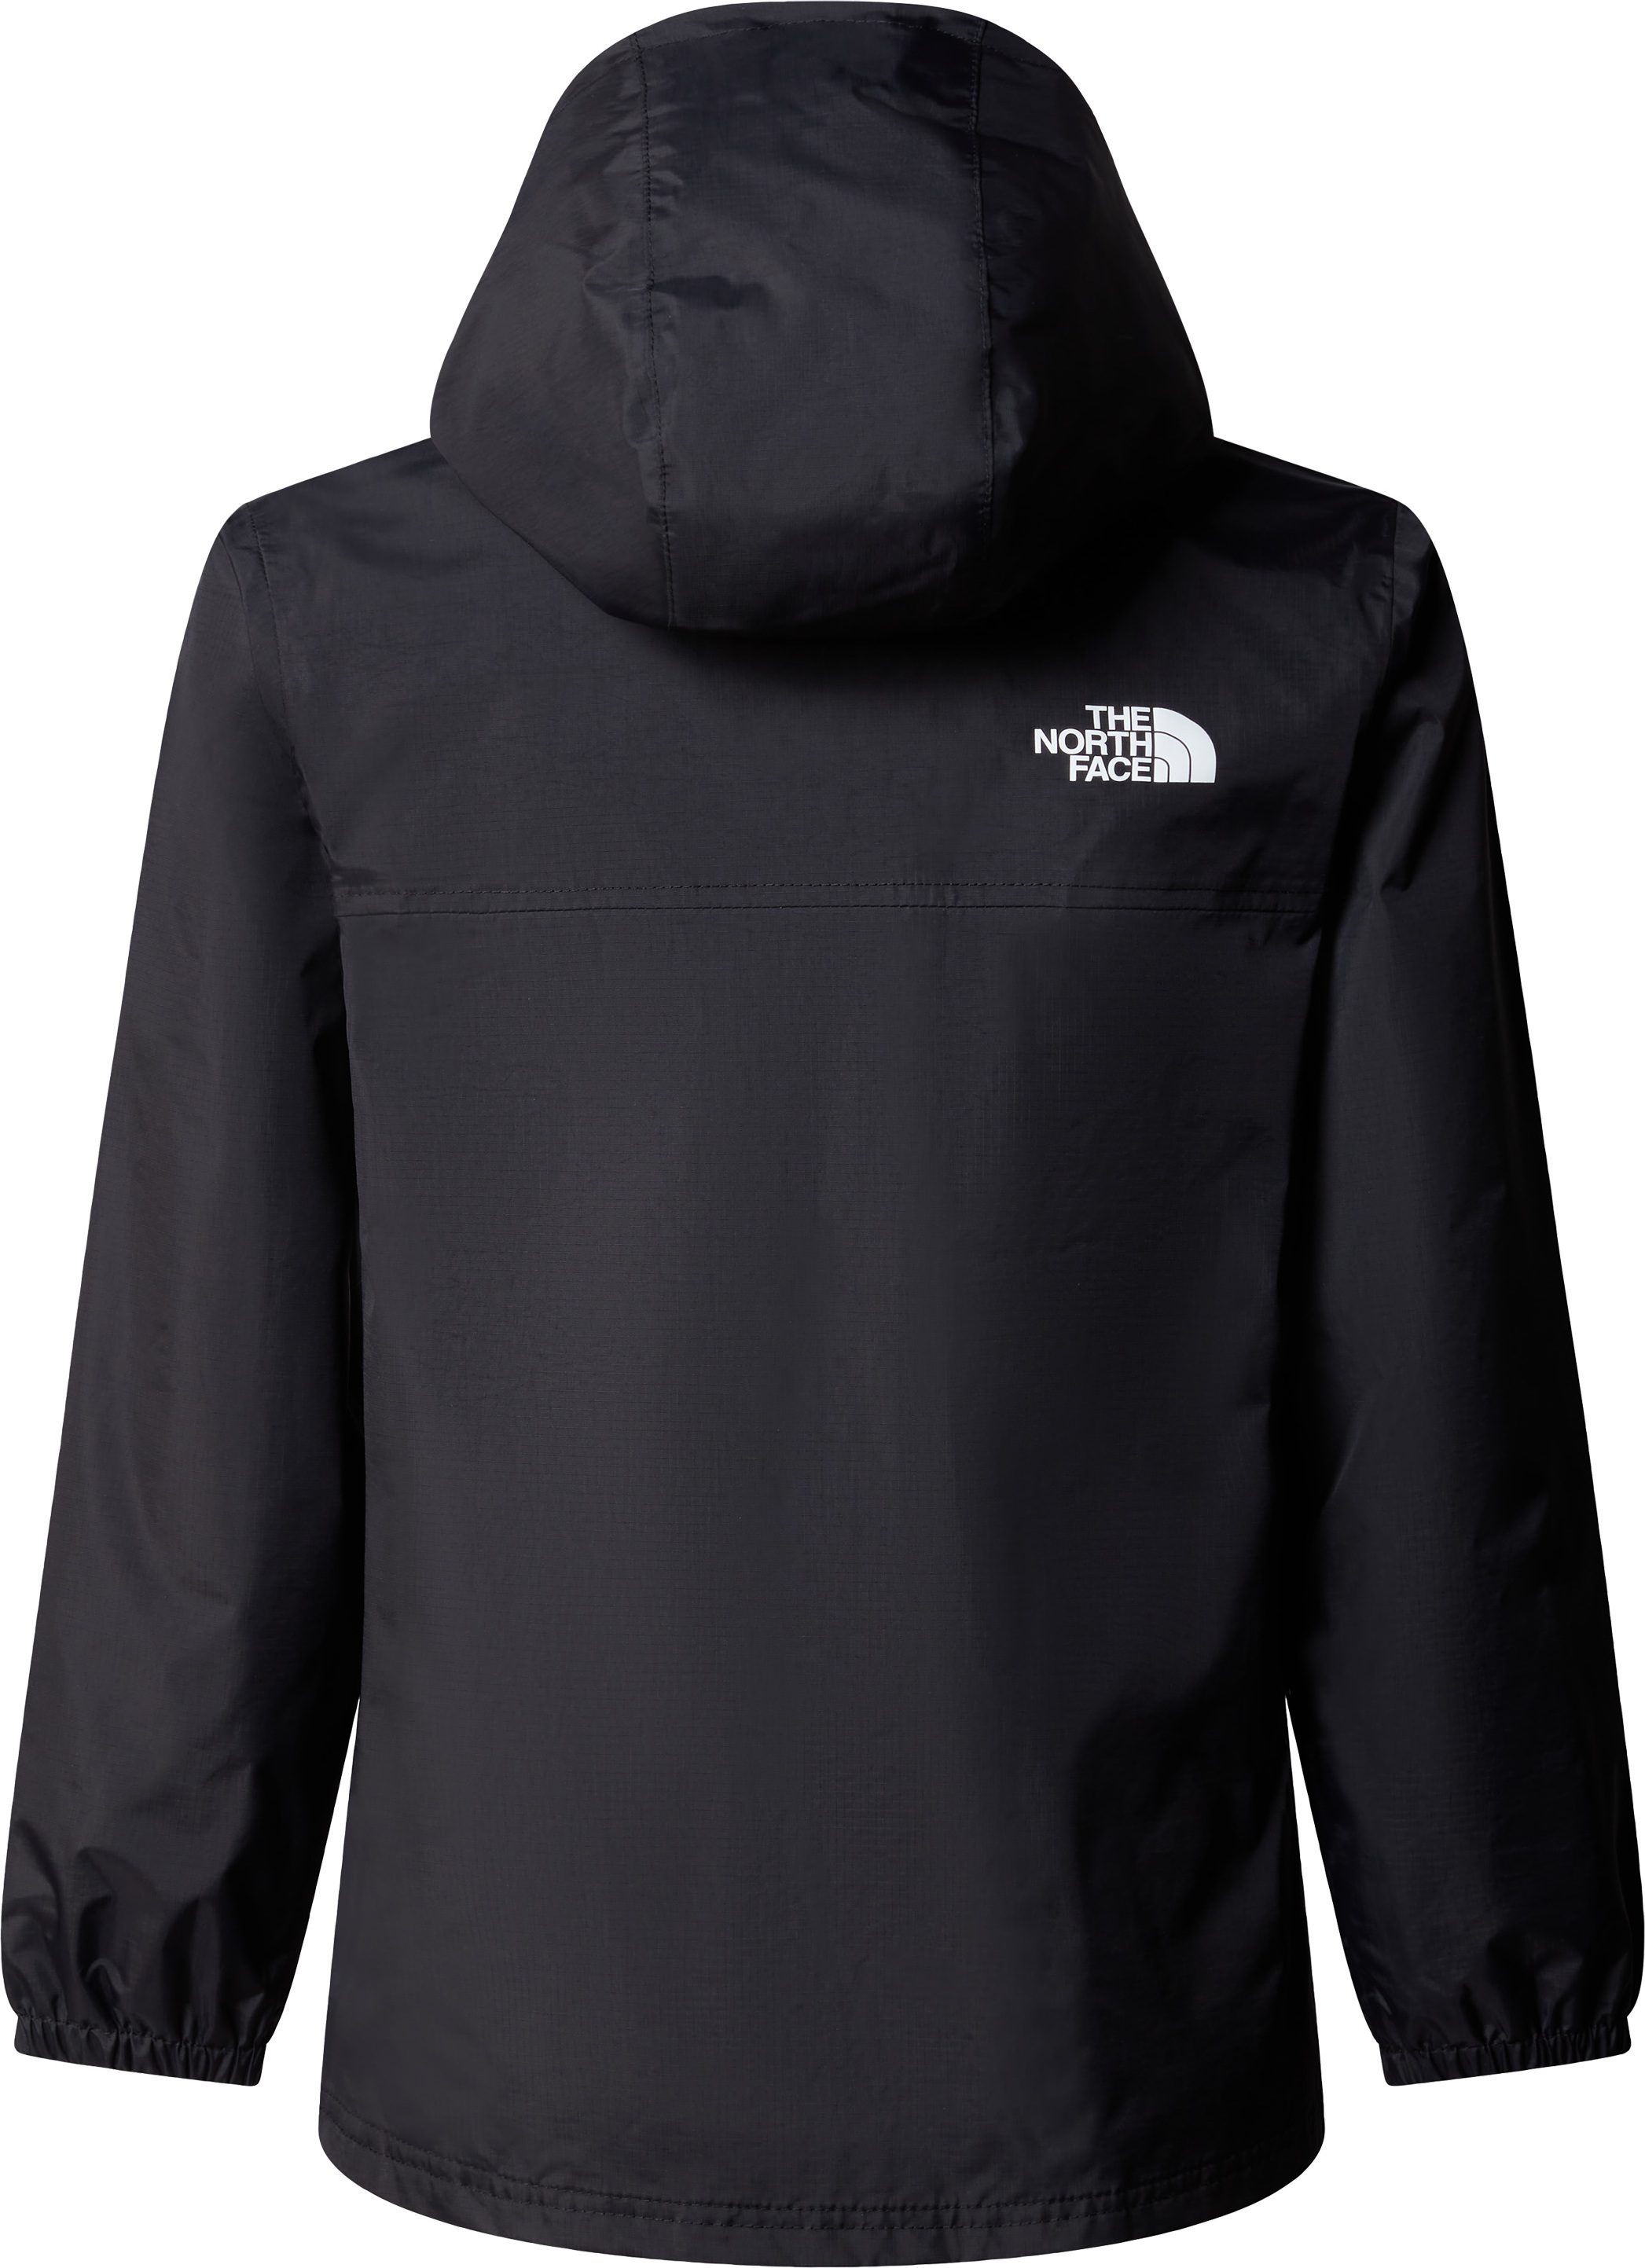 The North Face Teens' Rainwear Shell Jacket TNF Black | Buy The 